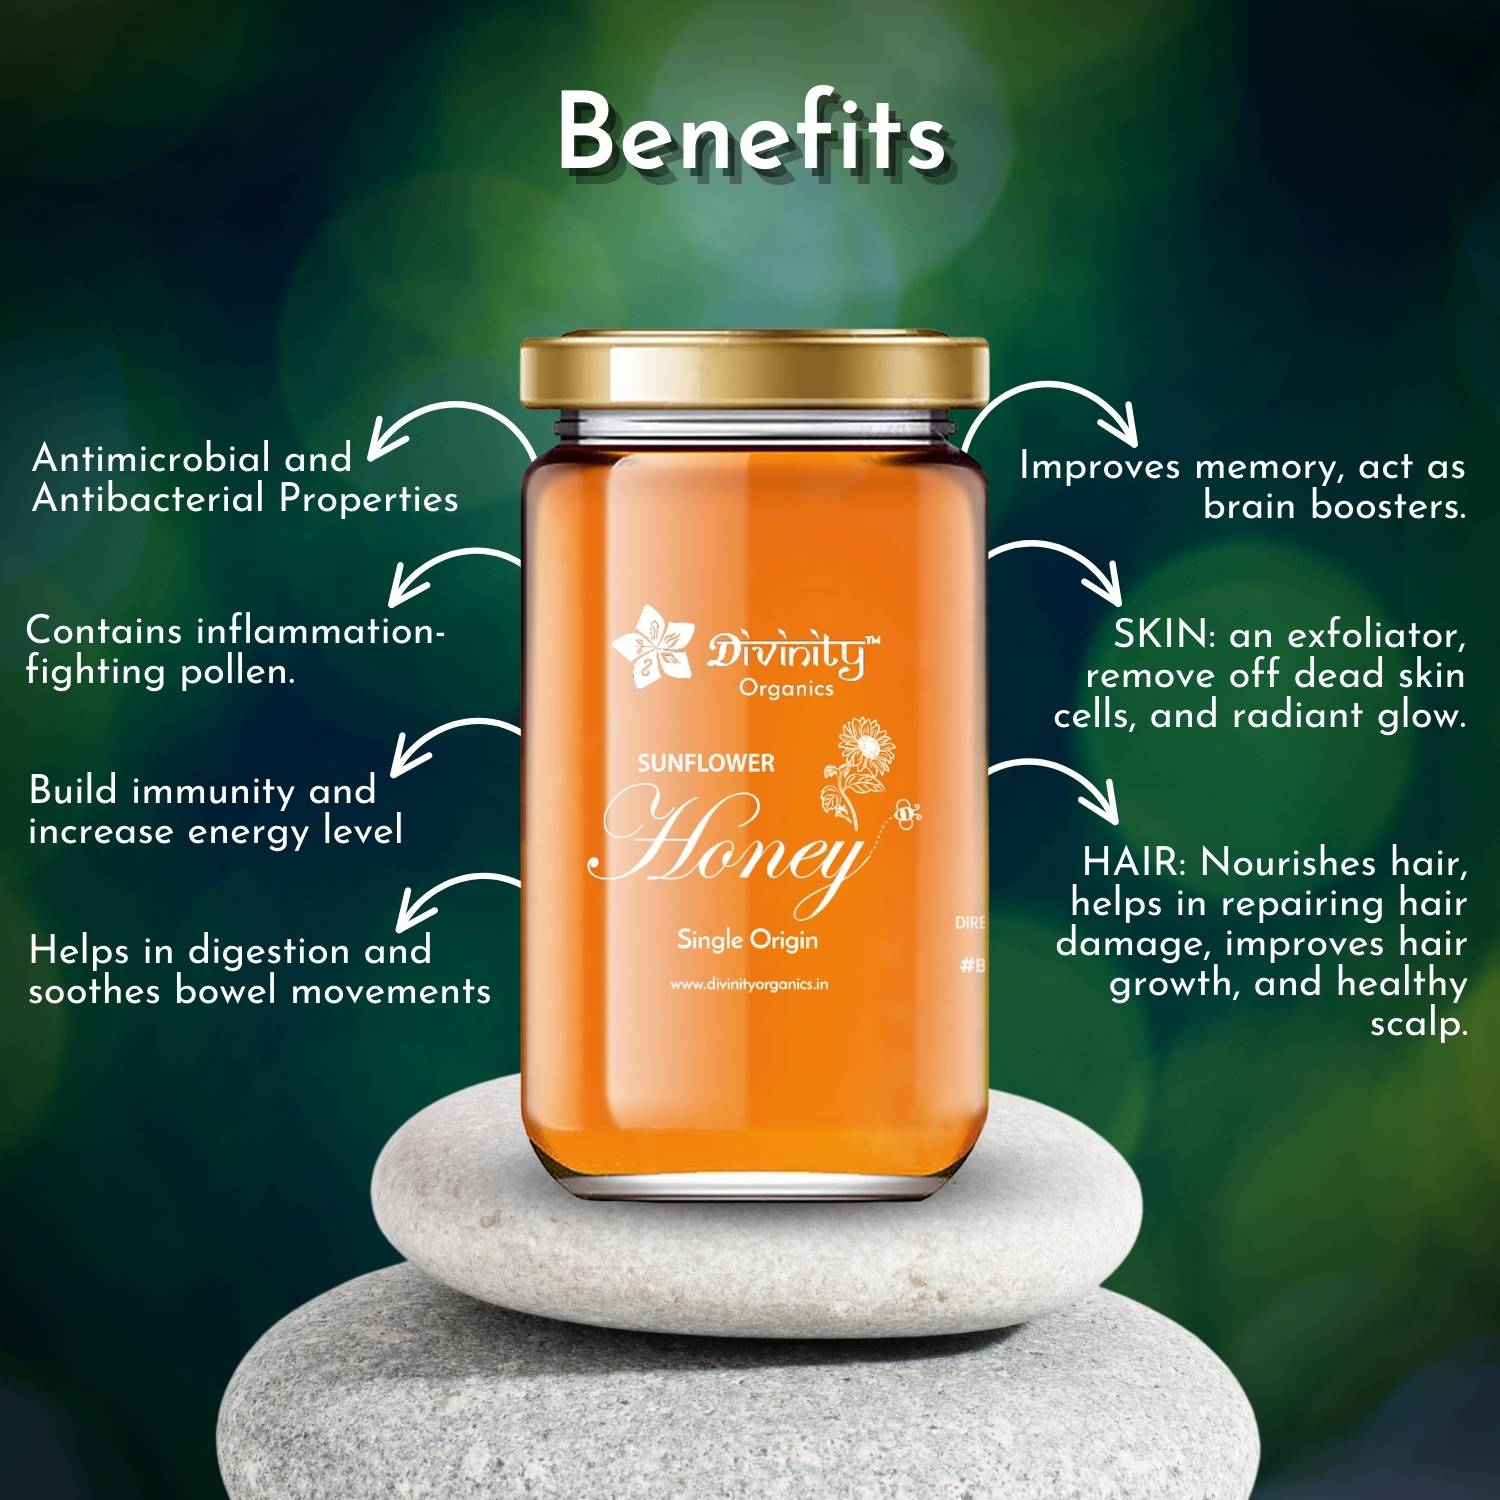 Divinity Organics - Sunflower Honey Benefits